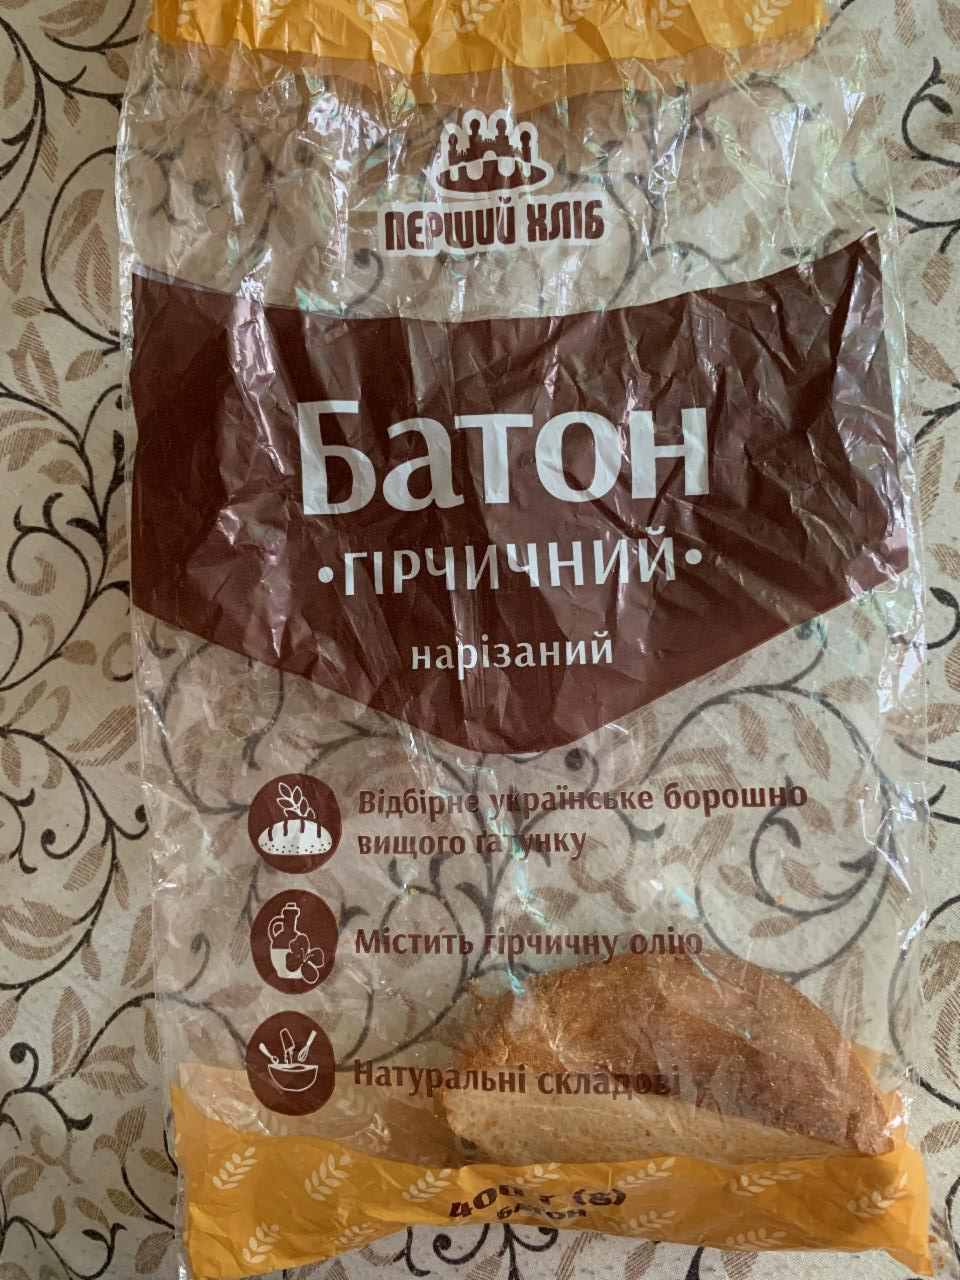 Фото - Батон нарізний Гірчичний Перший хліб